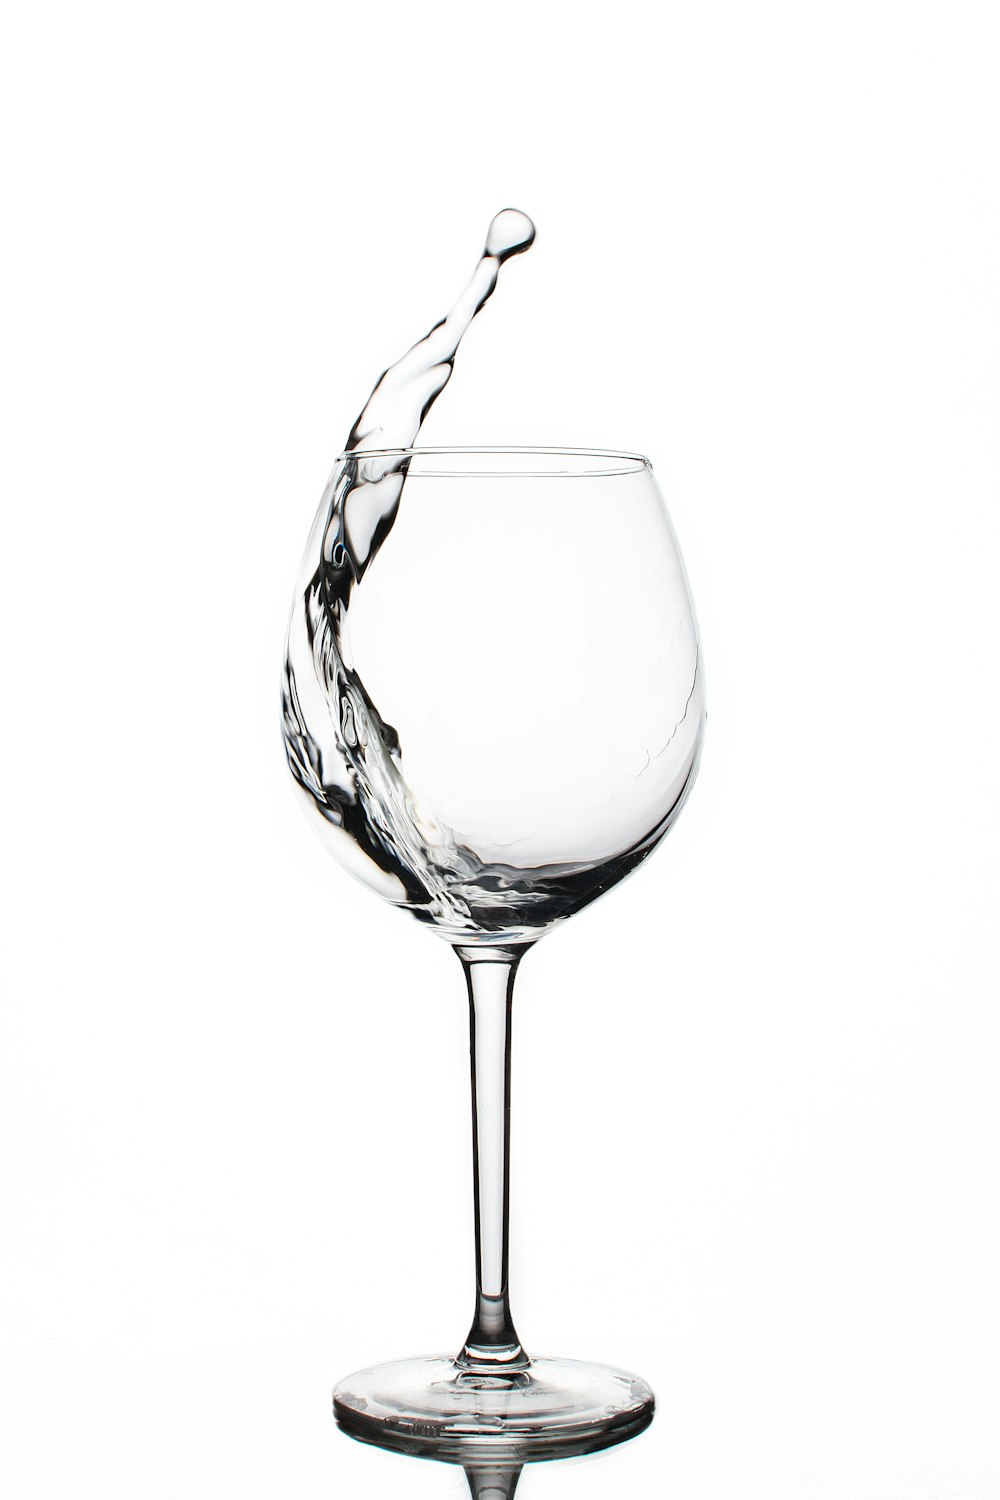 liquido in bicchiere da vino trasparente